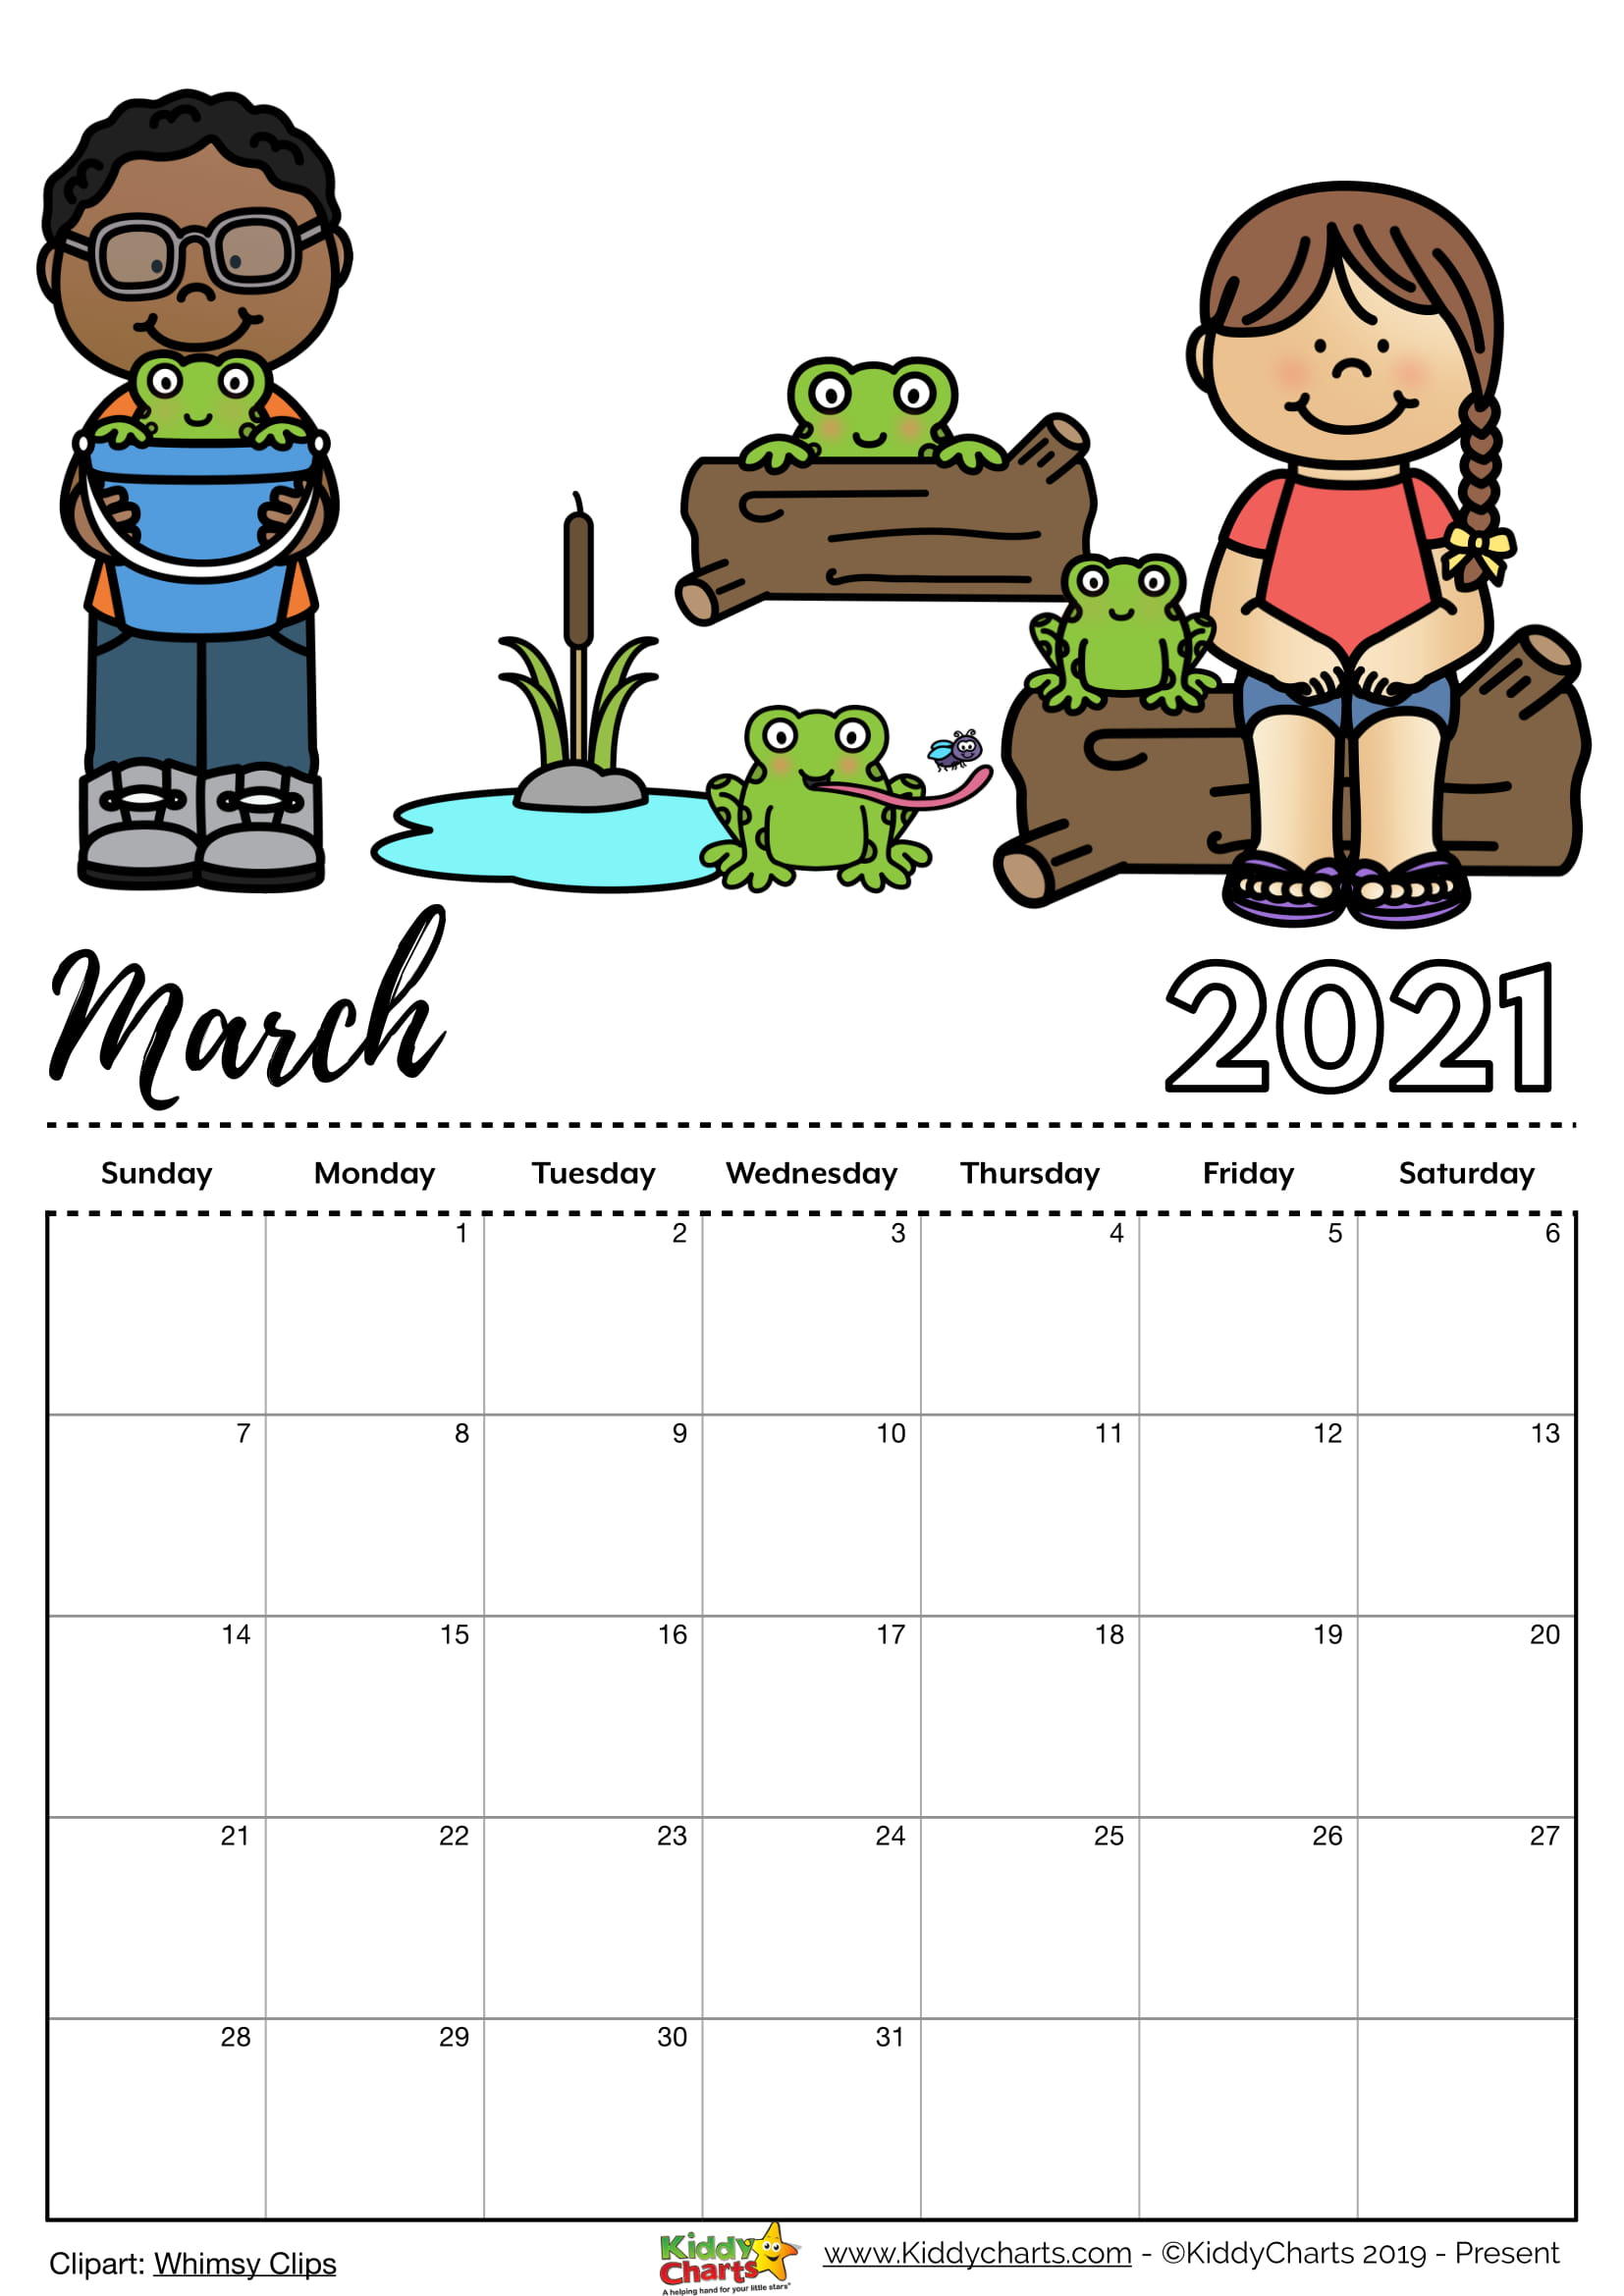 Editable 2021 Calendar for Sale - kiddycharts.com